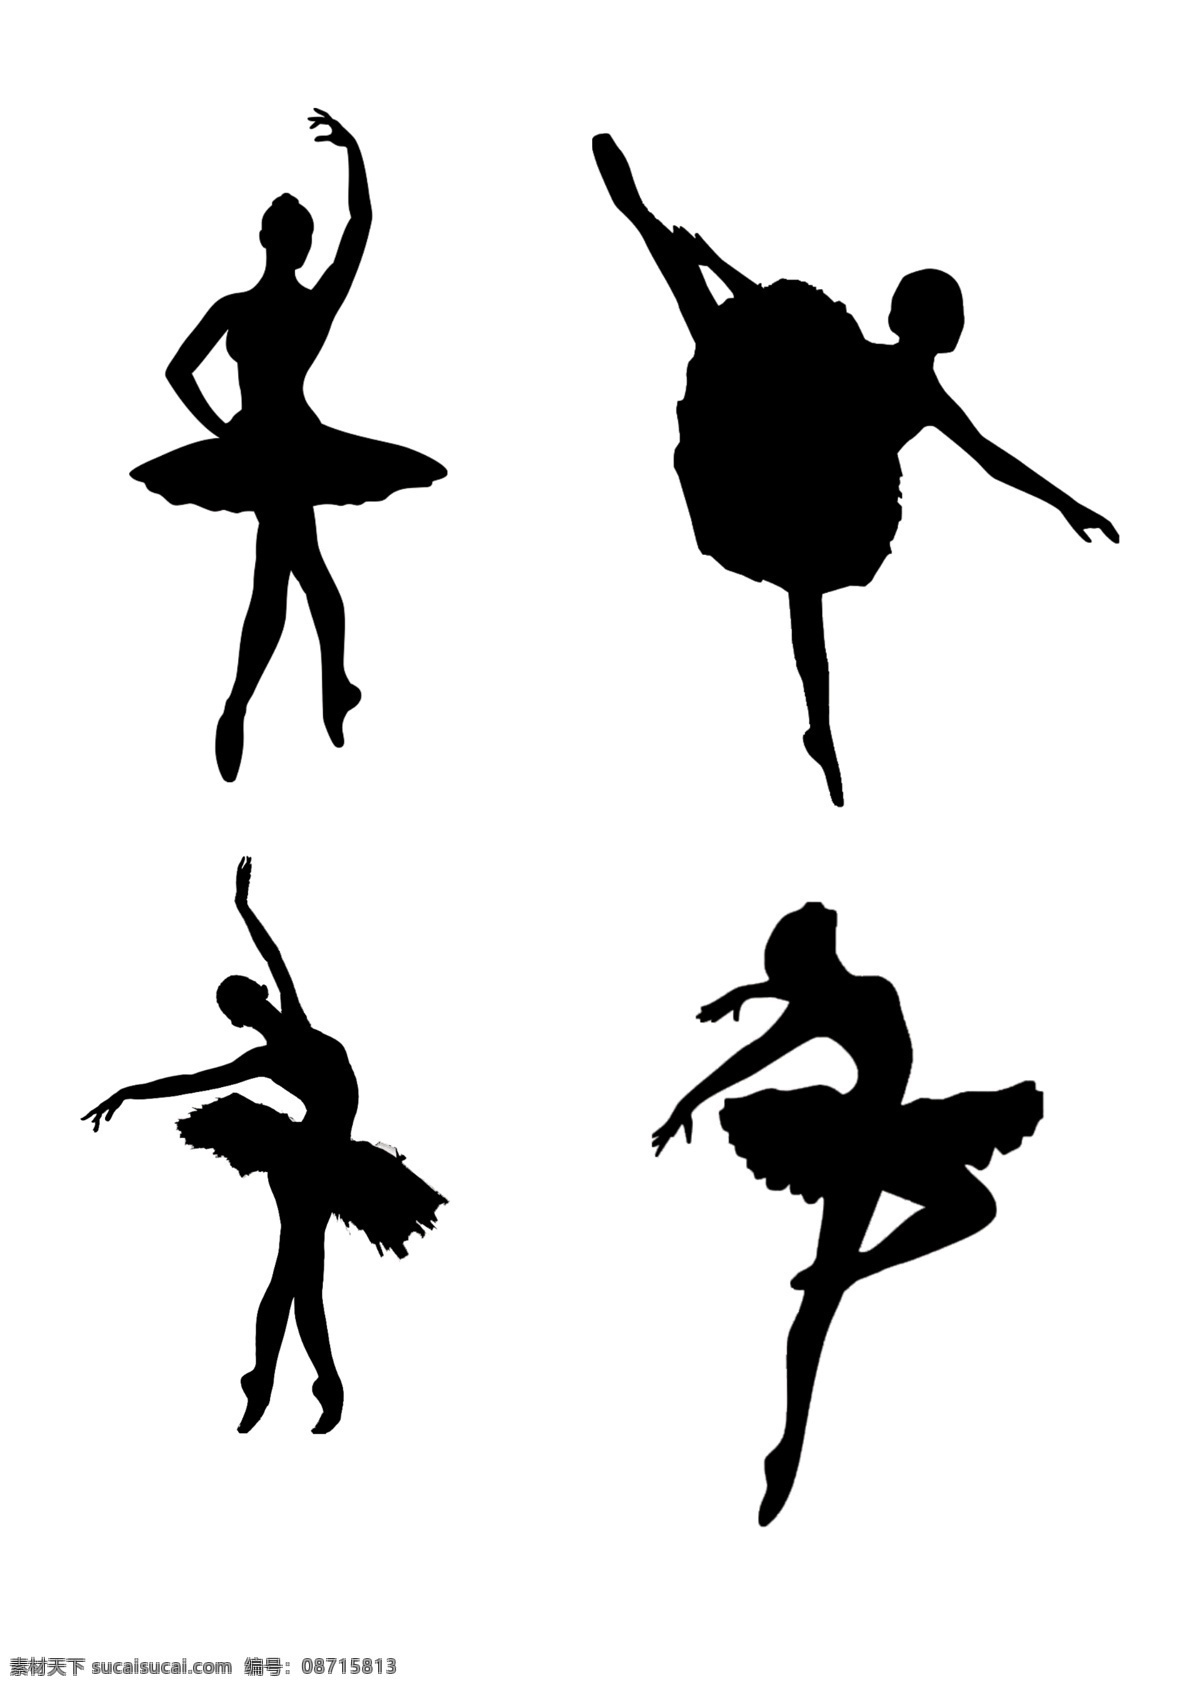 芭蕾 剪影 分层 美女 美女剪影 人体图片 跳舞剪影 舞蹈 源文件 人体剪影 身影 海报 海报背景图